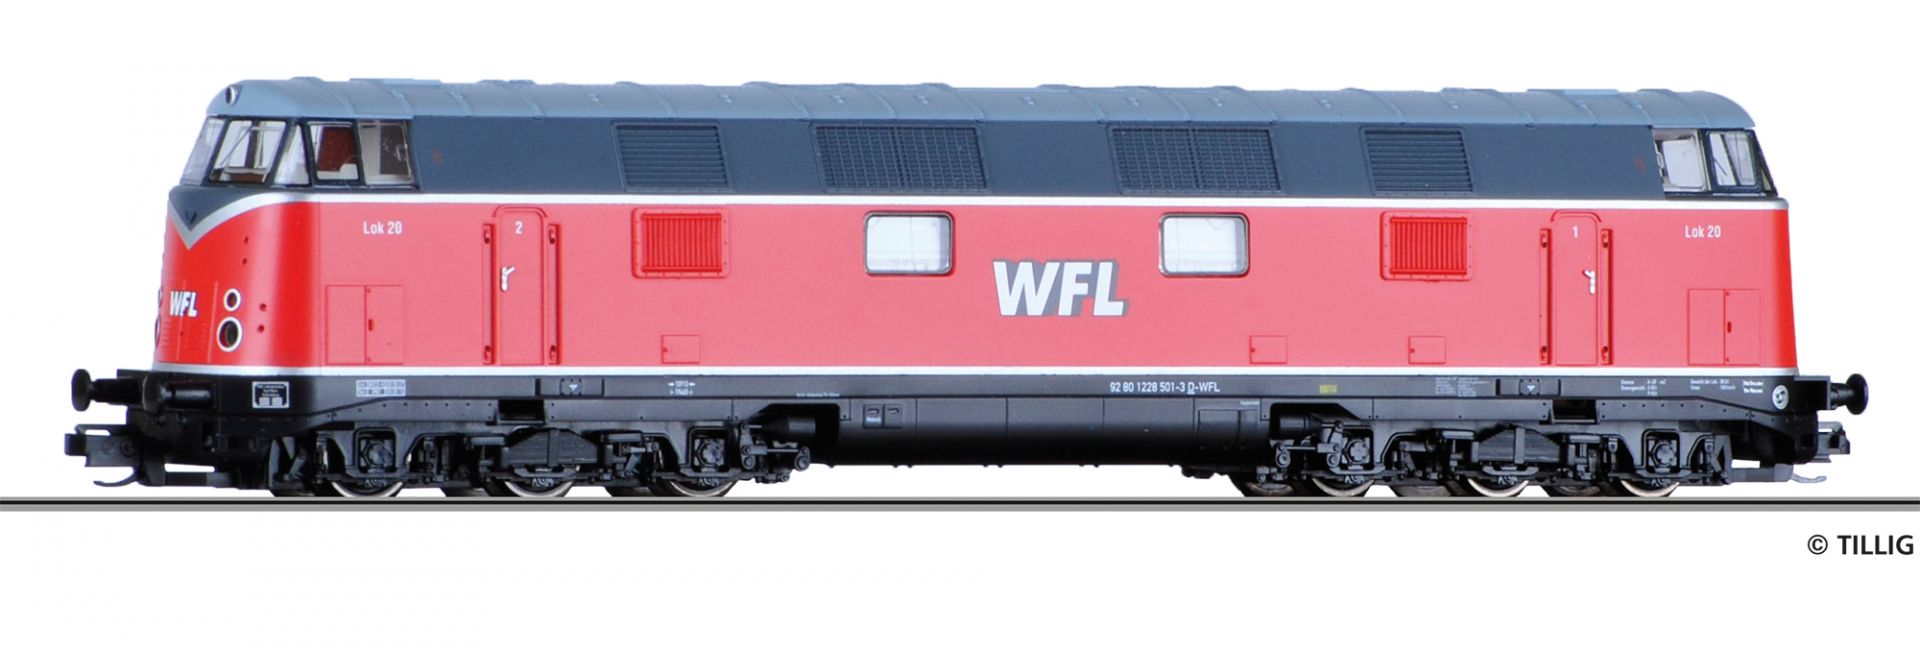 02698 | Diesellokomotive Wedler & Franz GbR